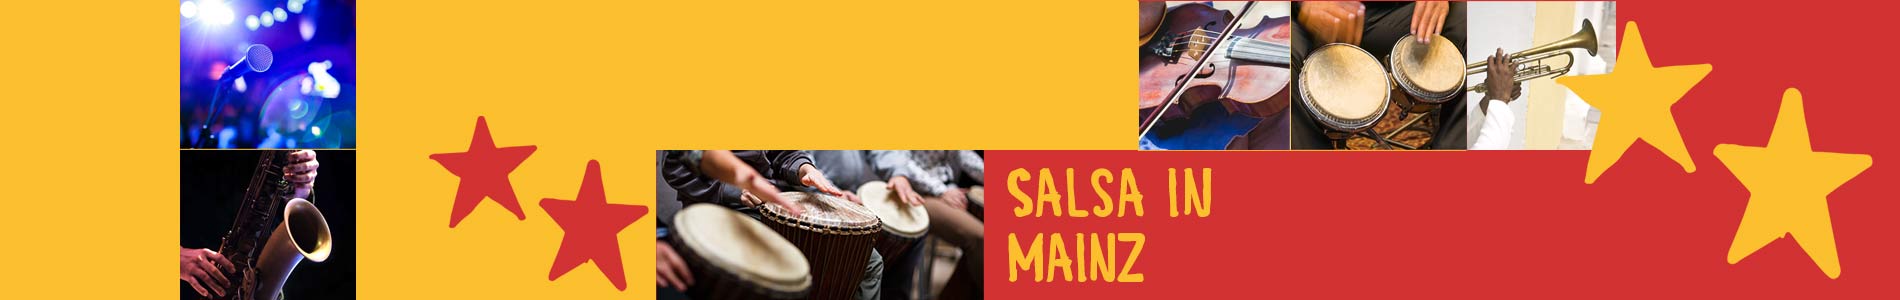 Salsa in Mainz – Salsa lernen und tanzen, Tanzkurse, Partys, Veranstaltungen